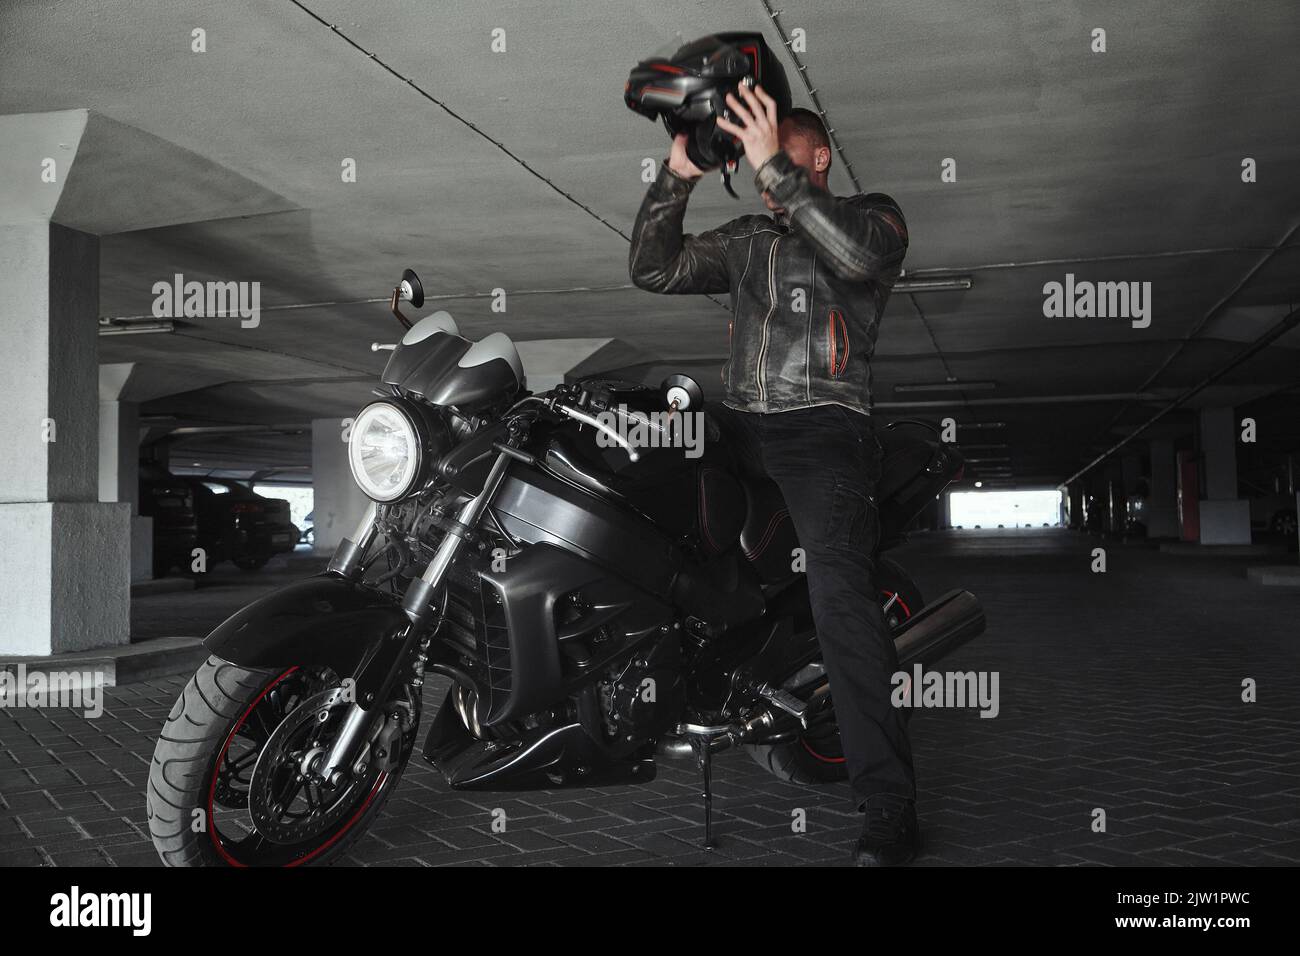 Un homme assis sur une moto prend son casque dans un garage souterrain, en mouvement Banque D'Images